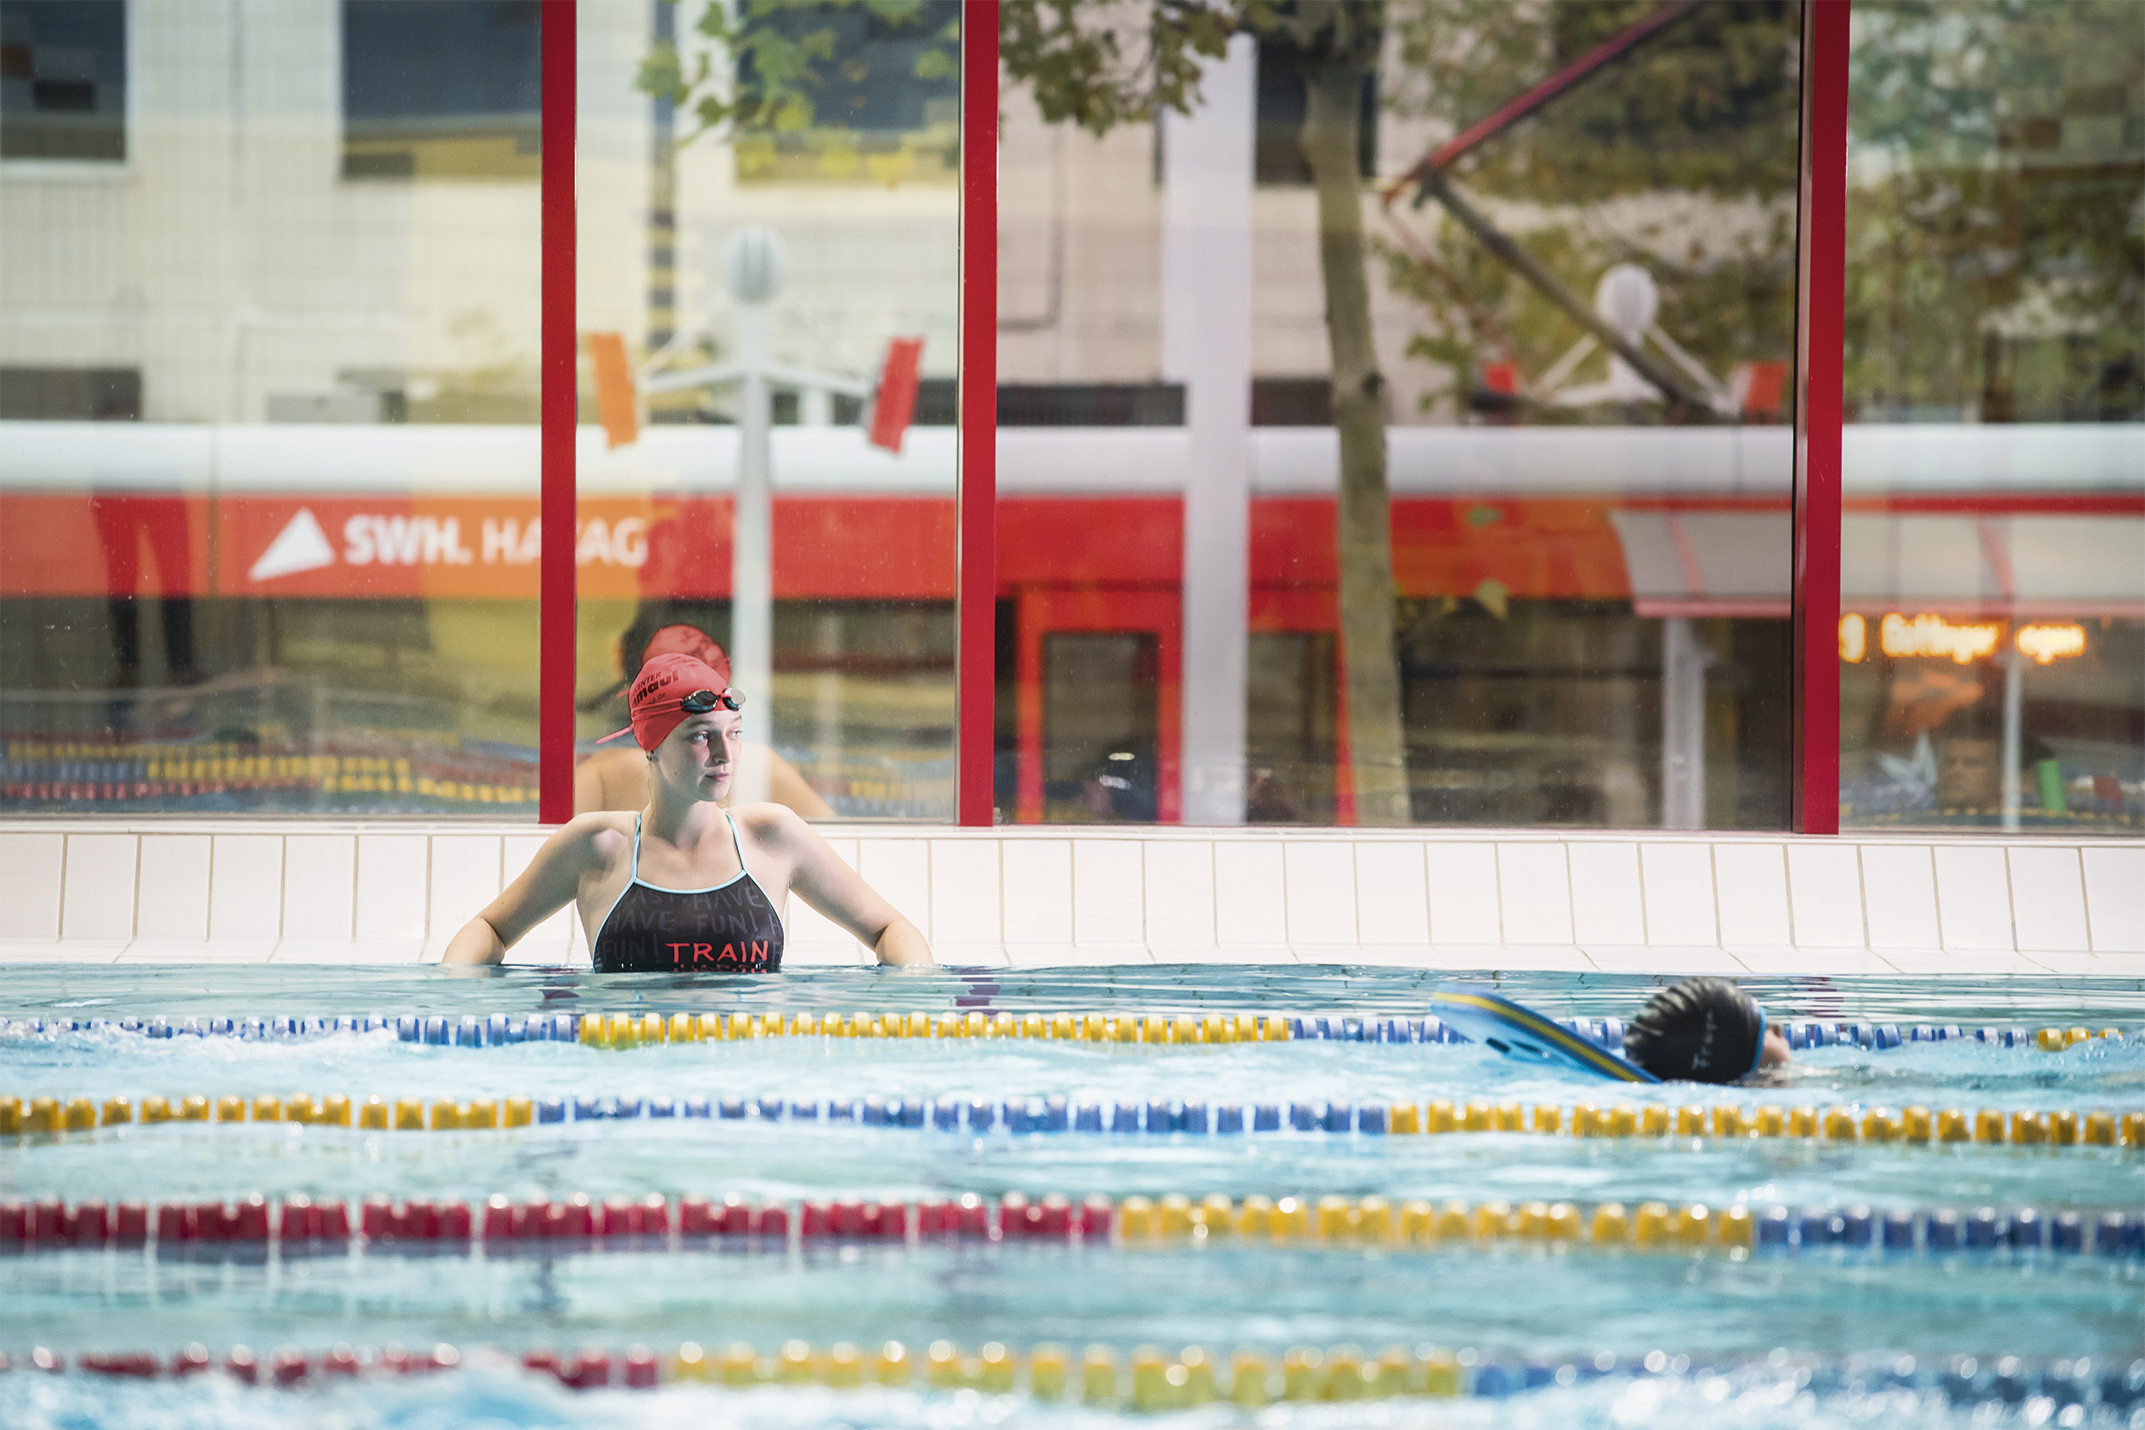 Das Bild zeigt eine Schwimmerin im Wasser in der Schwimmhalle Neustadt. Durch die großen Fenster im Hintergrund ist die Straßenbahn zu sehen.